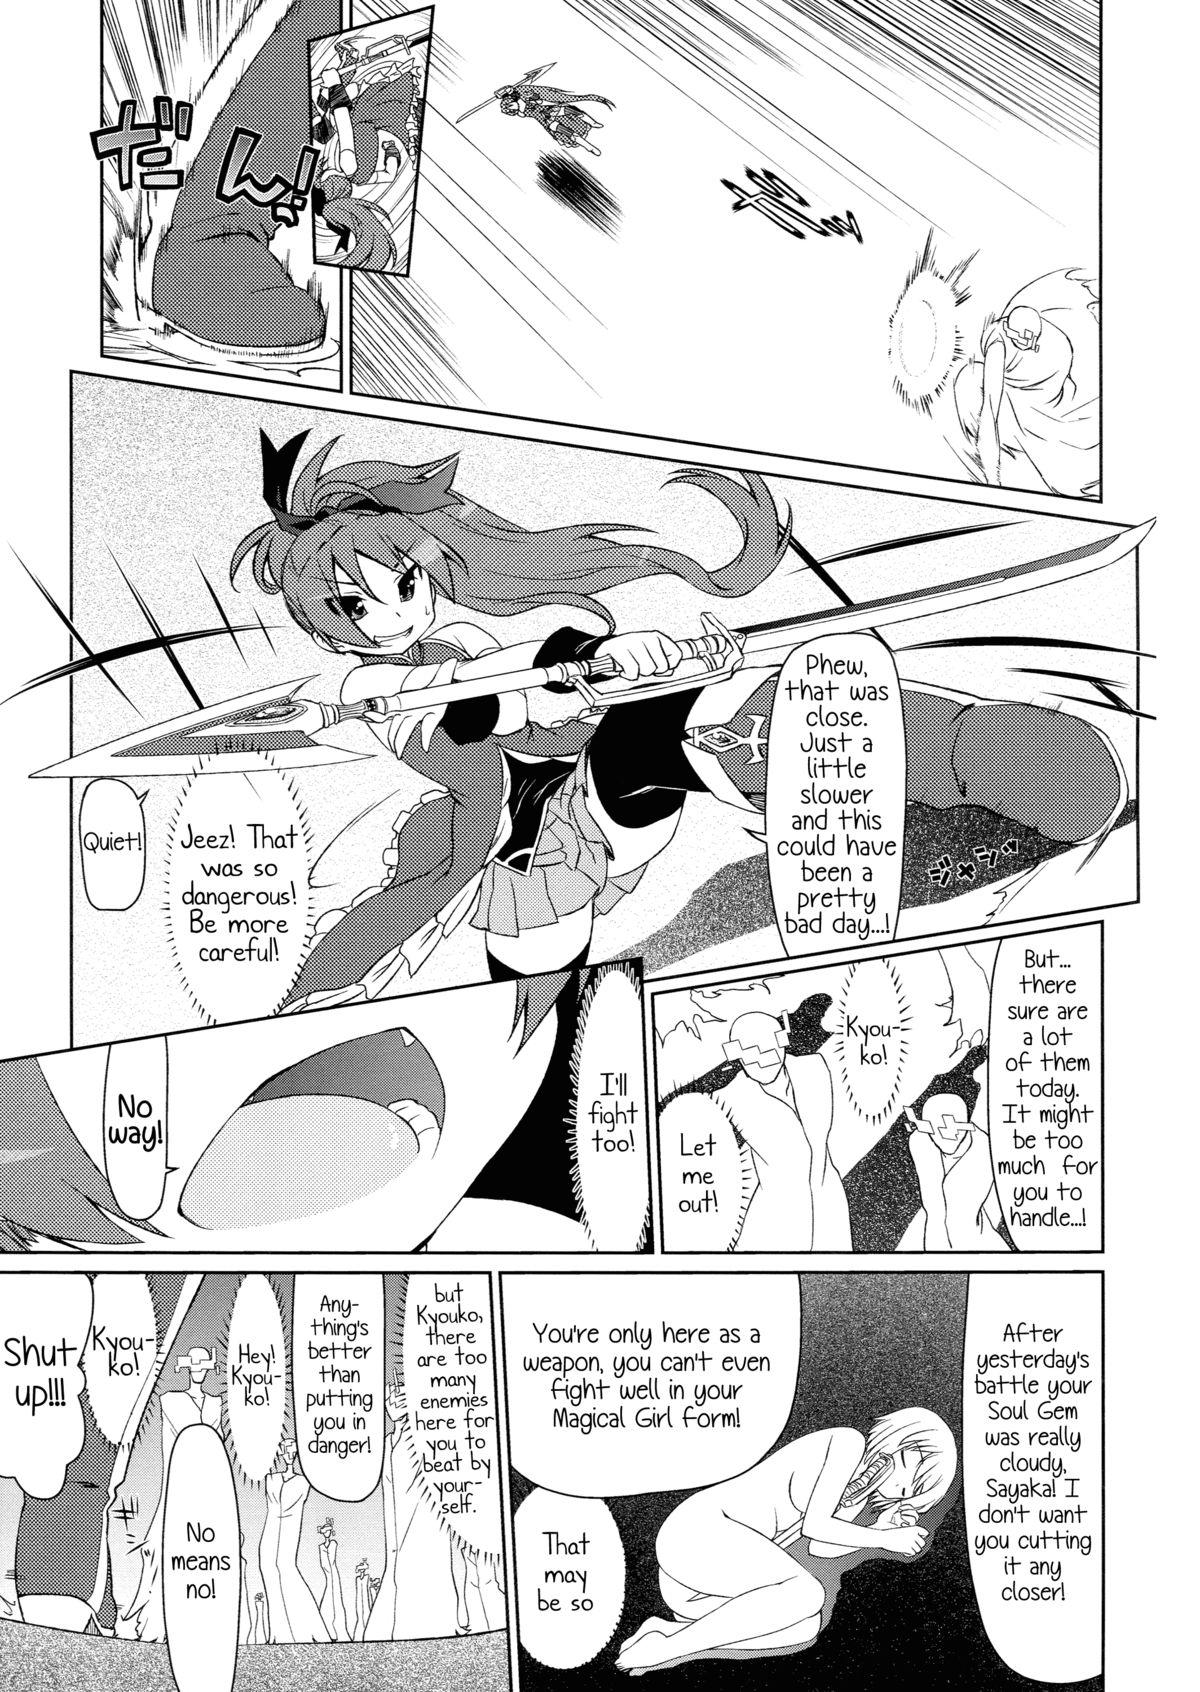 Nudity Gyakushuu no Akai Hito - Puella magi madoka magica Carro - Page 11